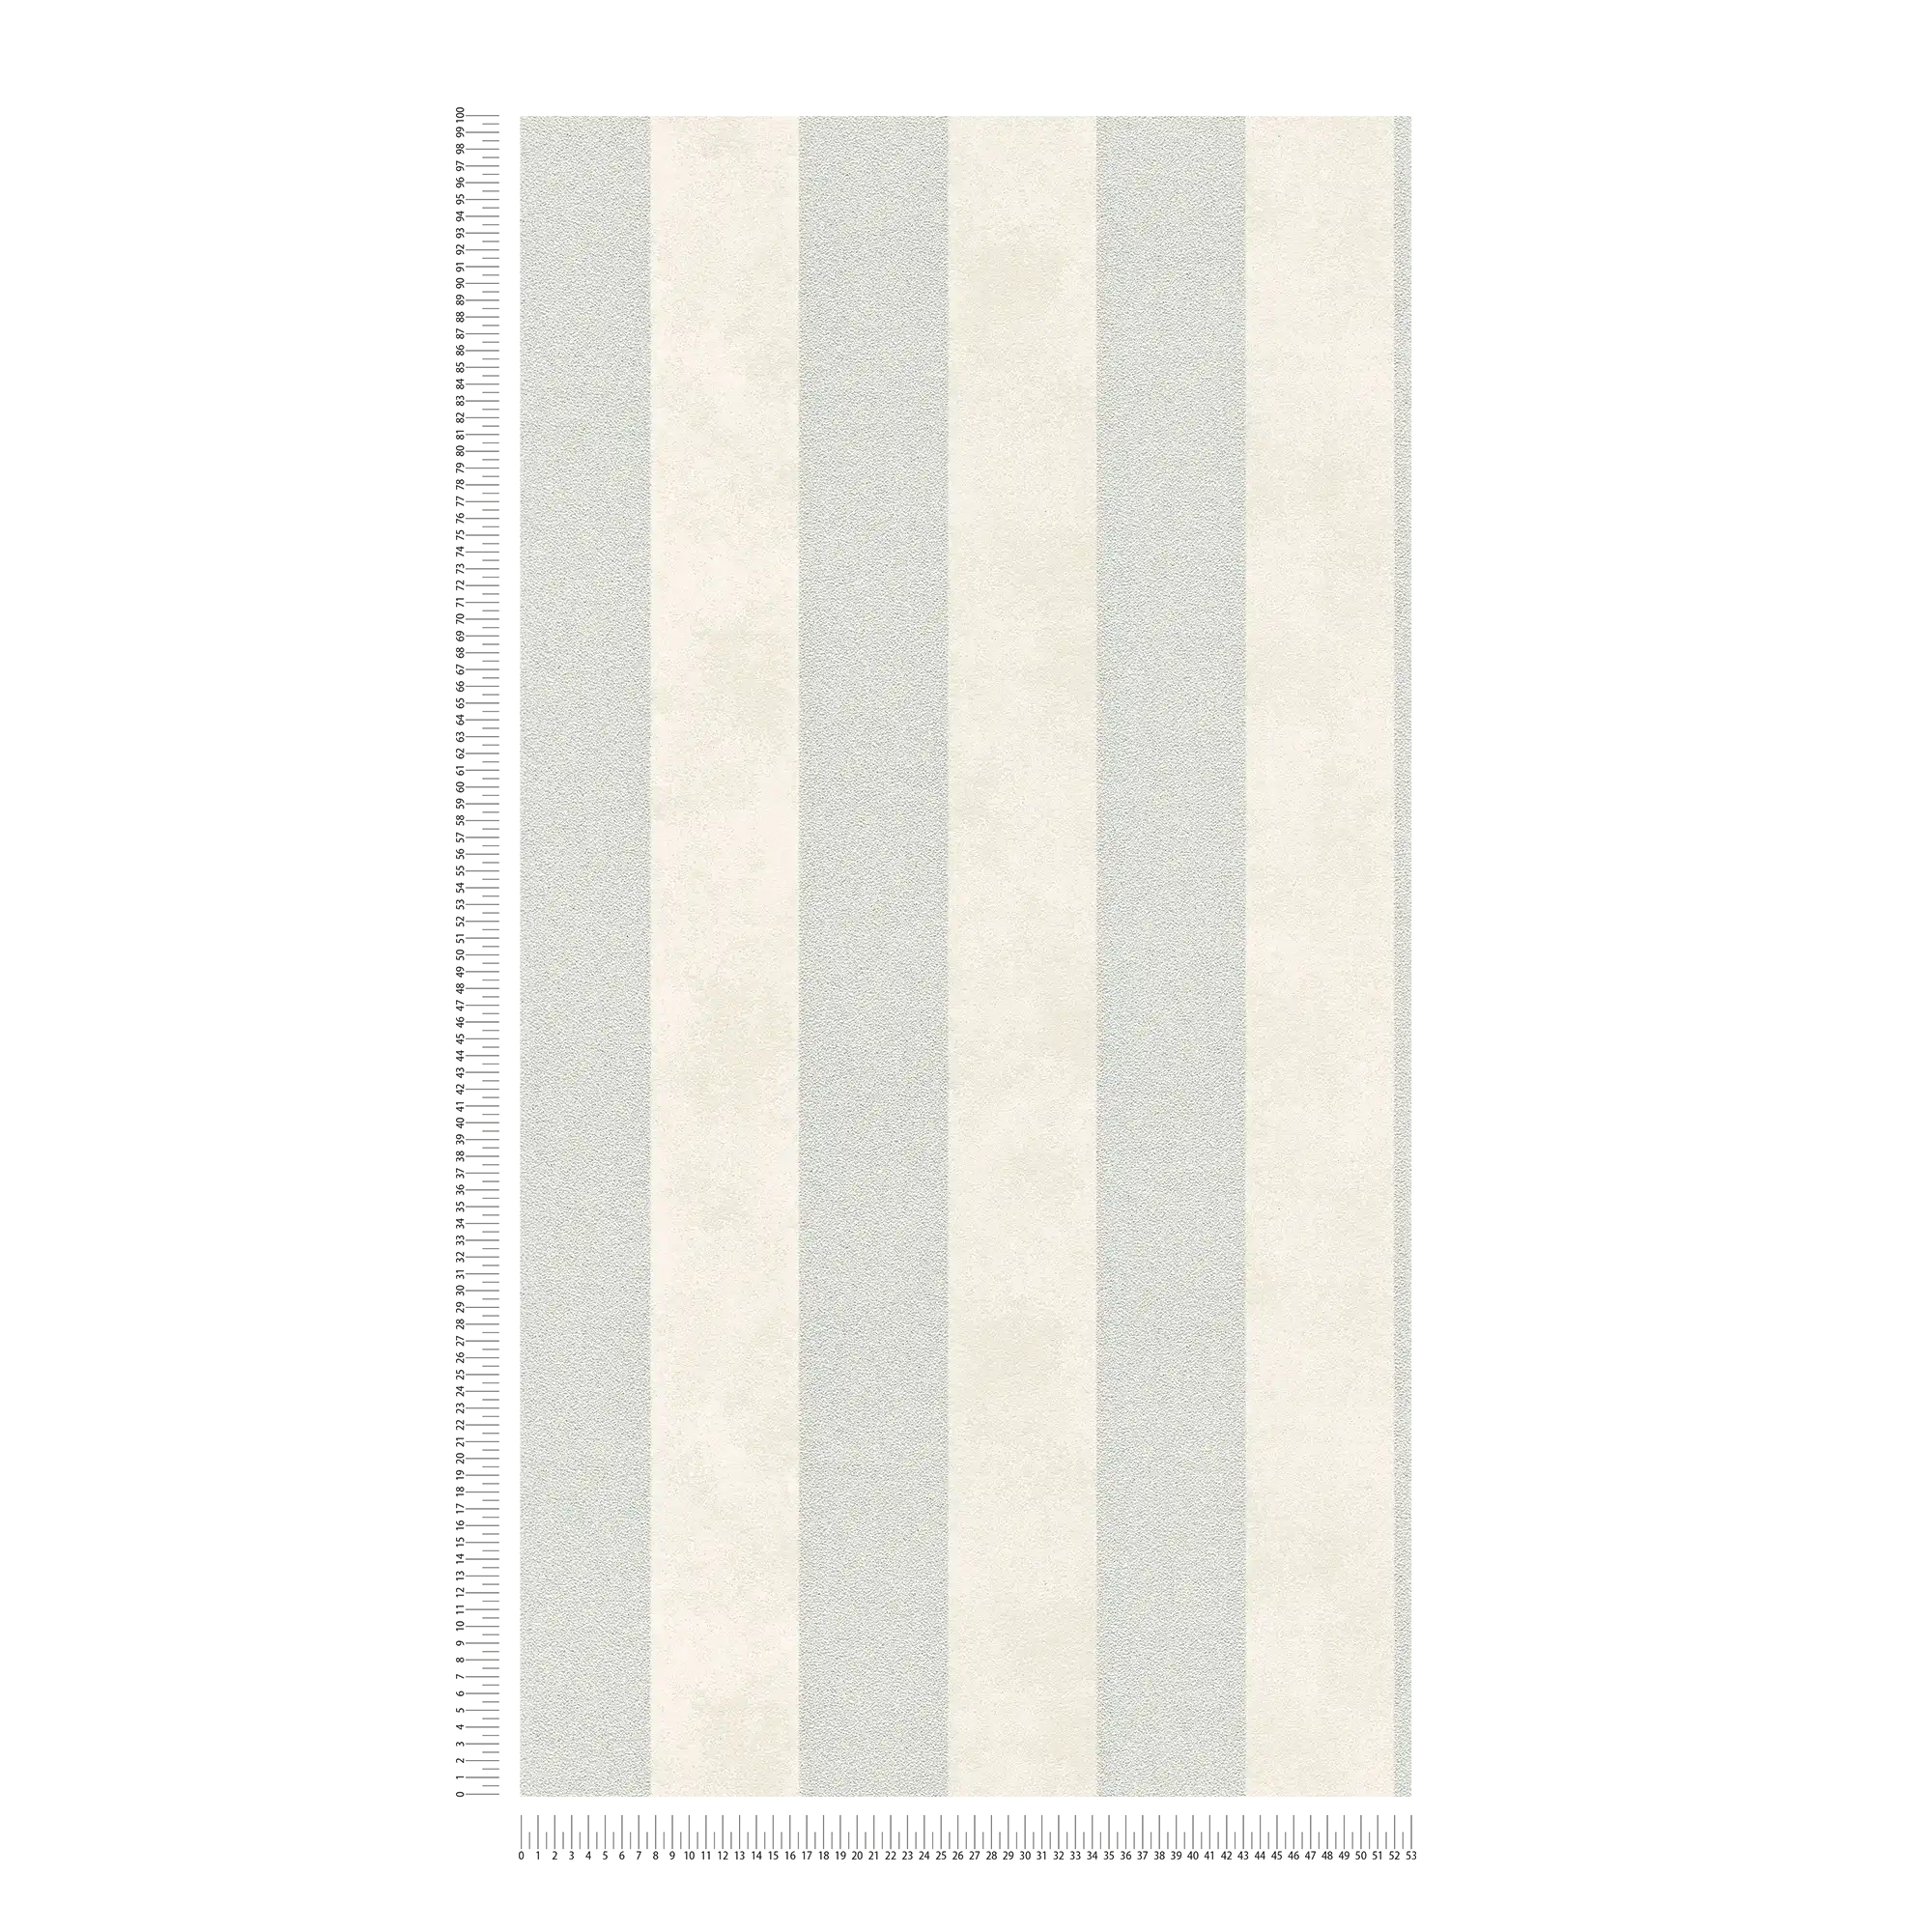             Carta da parati a righe a blocchi con motivo a colori e struttura - argento, grigio, bianco
        